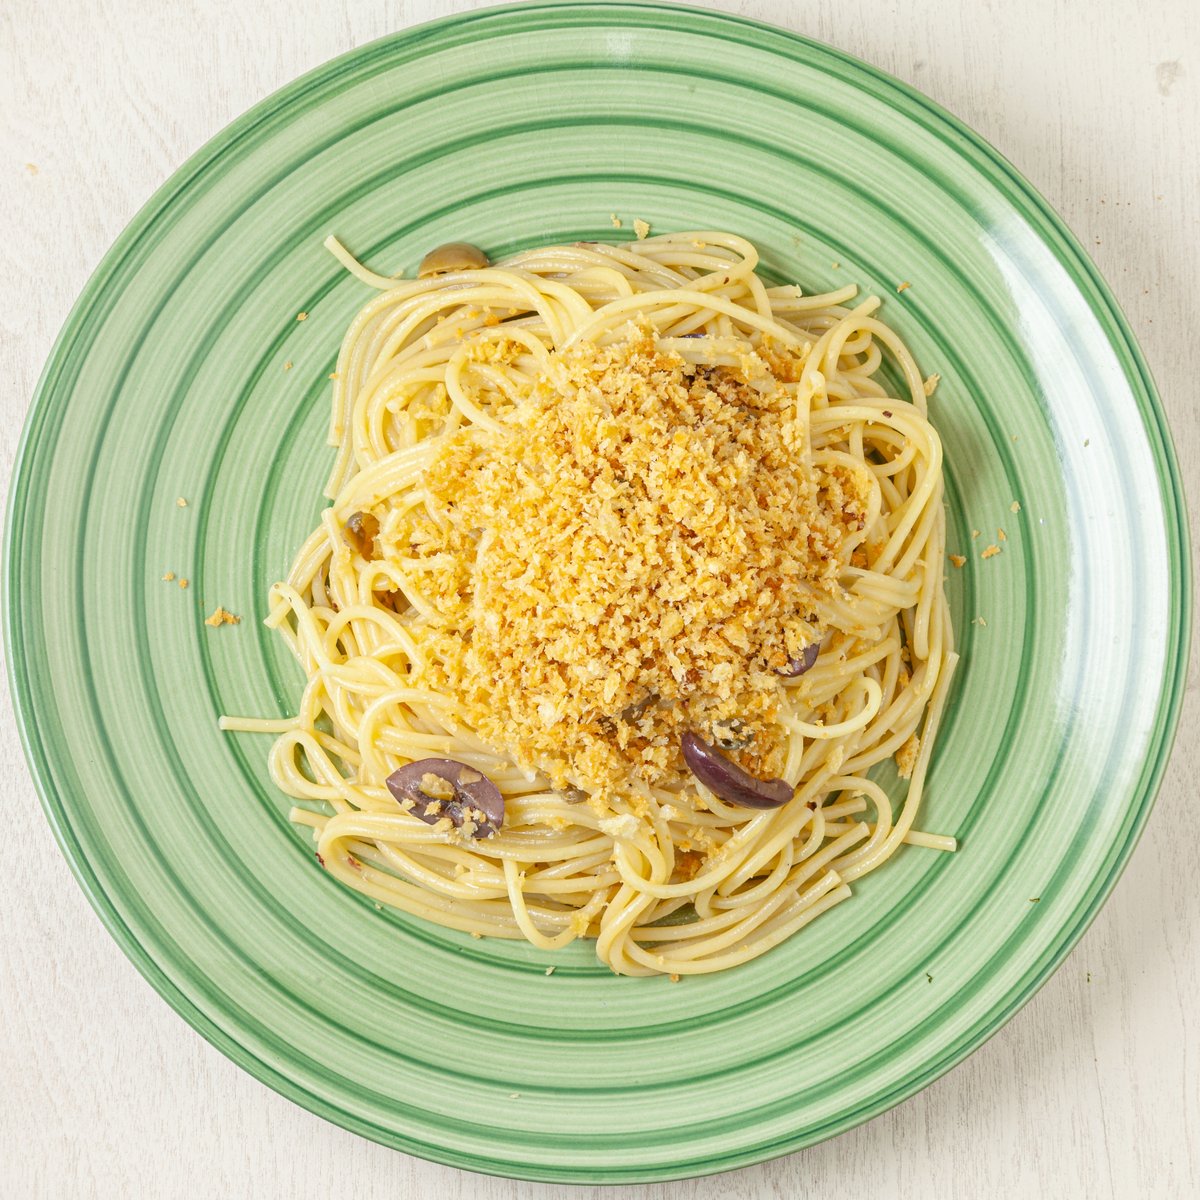 ヴィズマーラ恵子 イタリア在住 美味しいでしょうけど スパゲッティ デル ポベレッロと言って 意味は 貧乏人のパスタ です お金がなく粉チーズが買えないのでチーズの代わりにパンをすり下ろして食べていた貧困層の食べ方です パルミッジャーノ